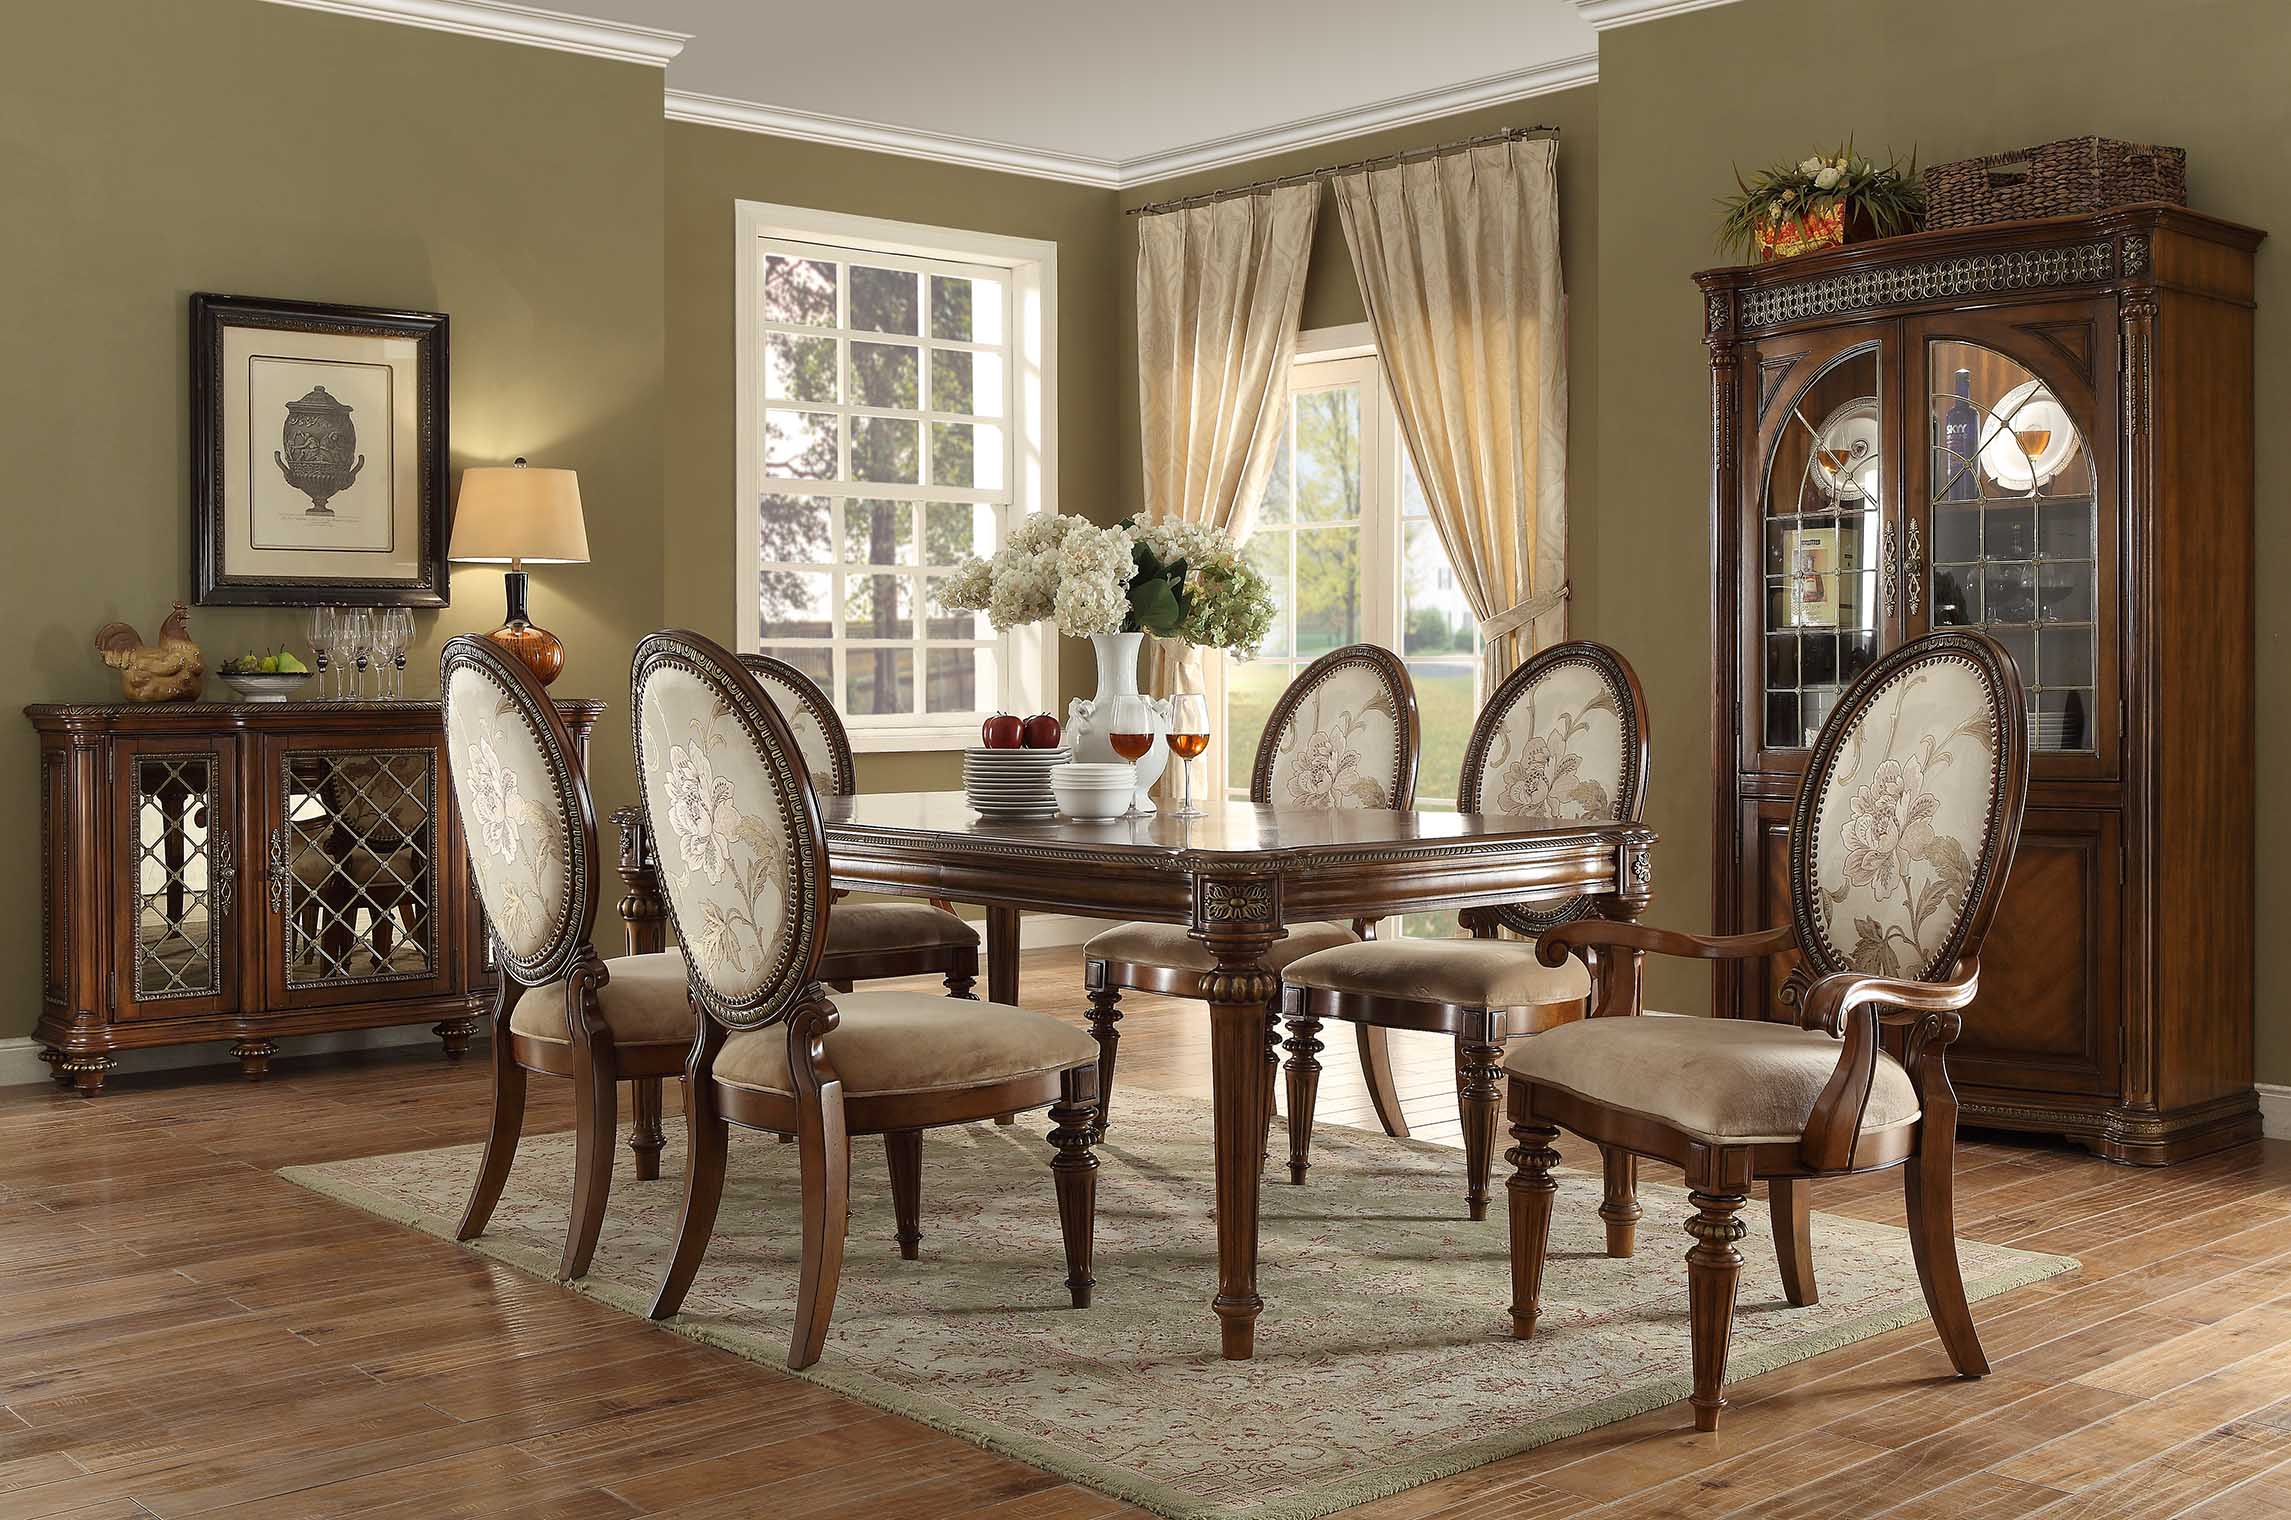 强调简洁,明晰的线条和优雅,得体有度的装饰是美式家具的特征.